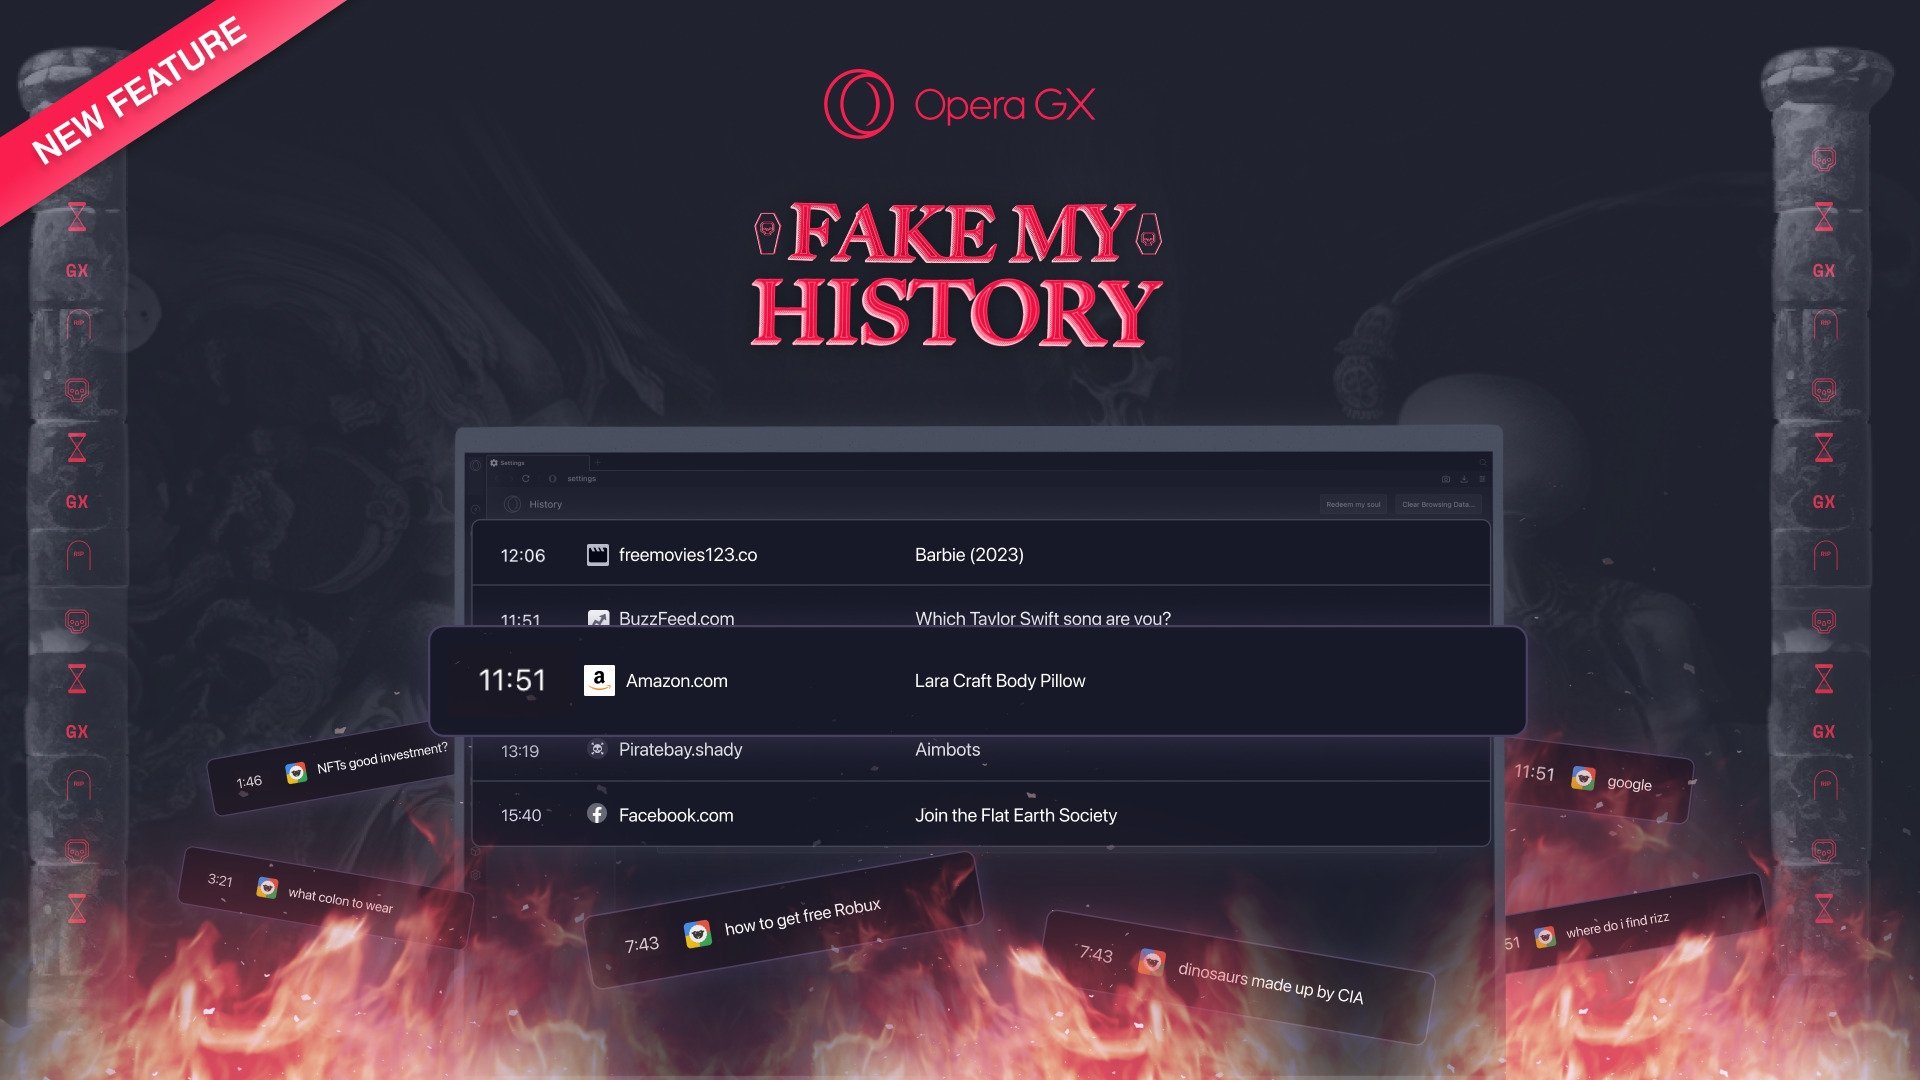 Opera GX agora cria “falsos históricos” para evitar pesquisas embaraçosas